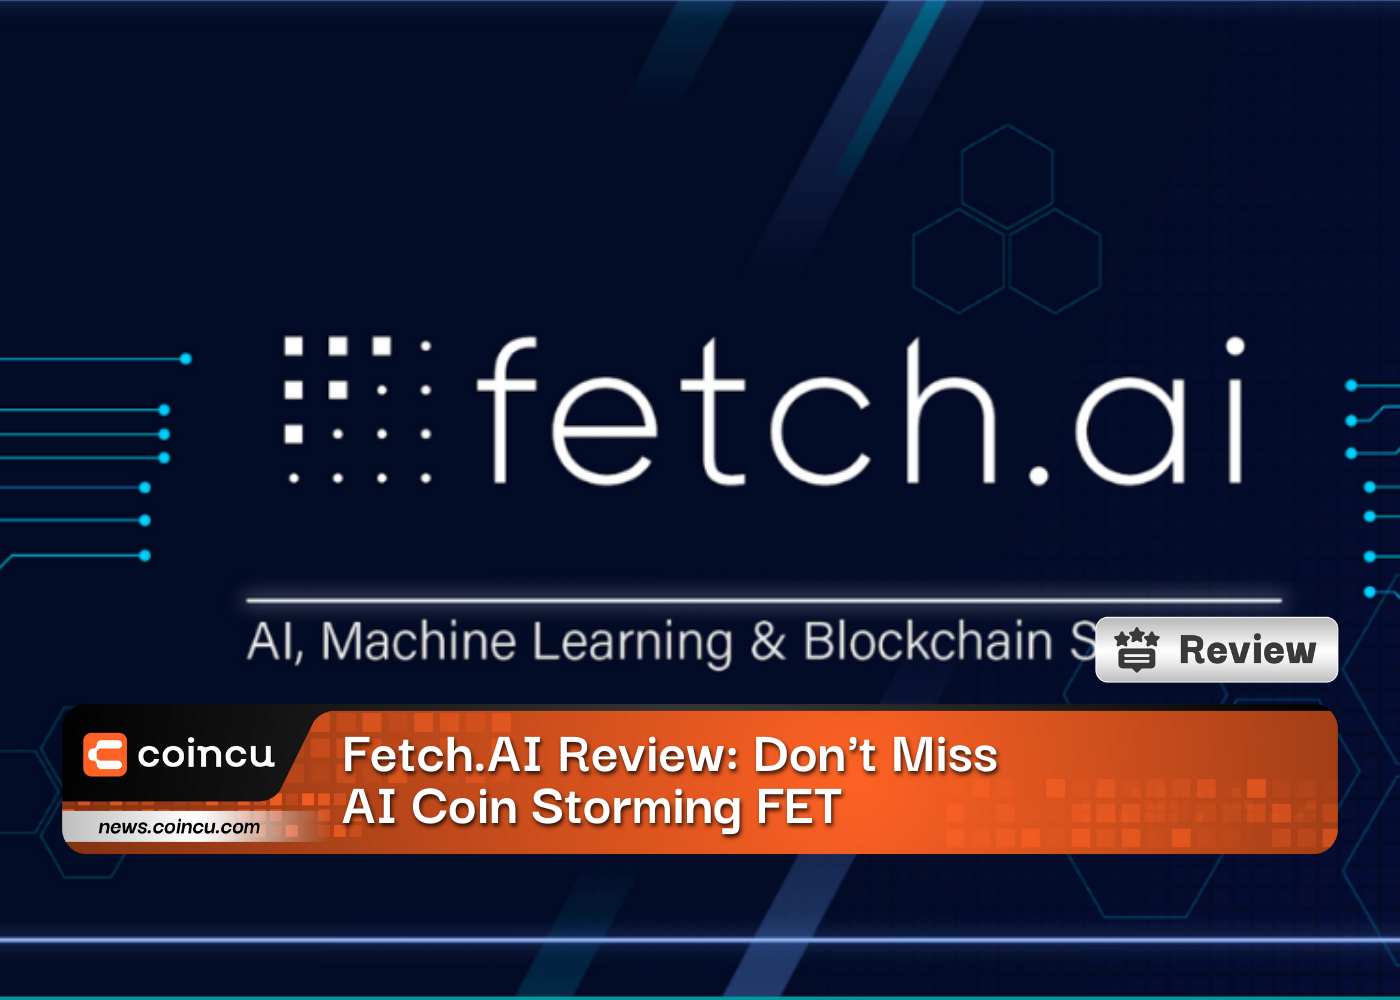 Đánh giá Fetch.AI: Đừng bỏ lỡ AI Coin Storming FET